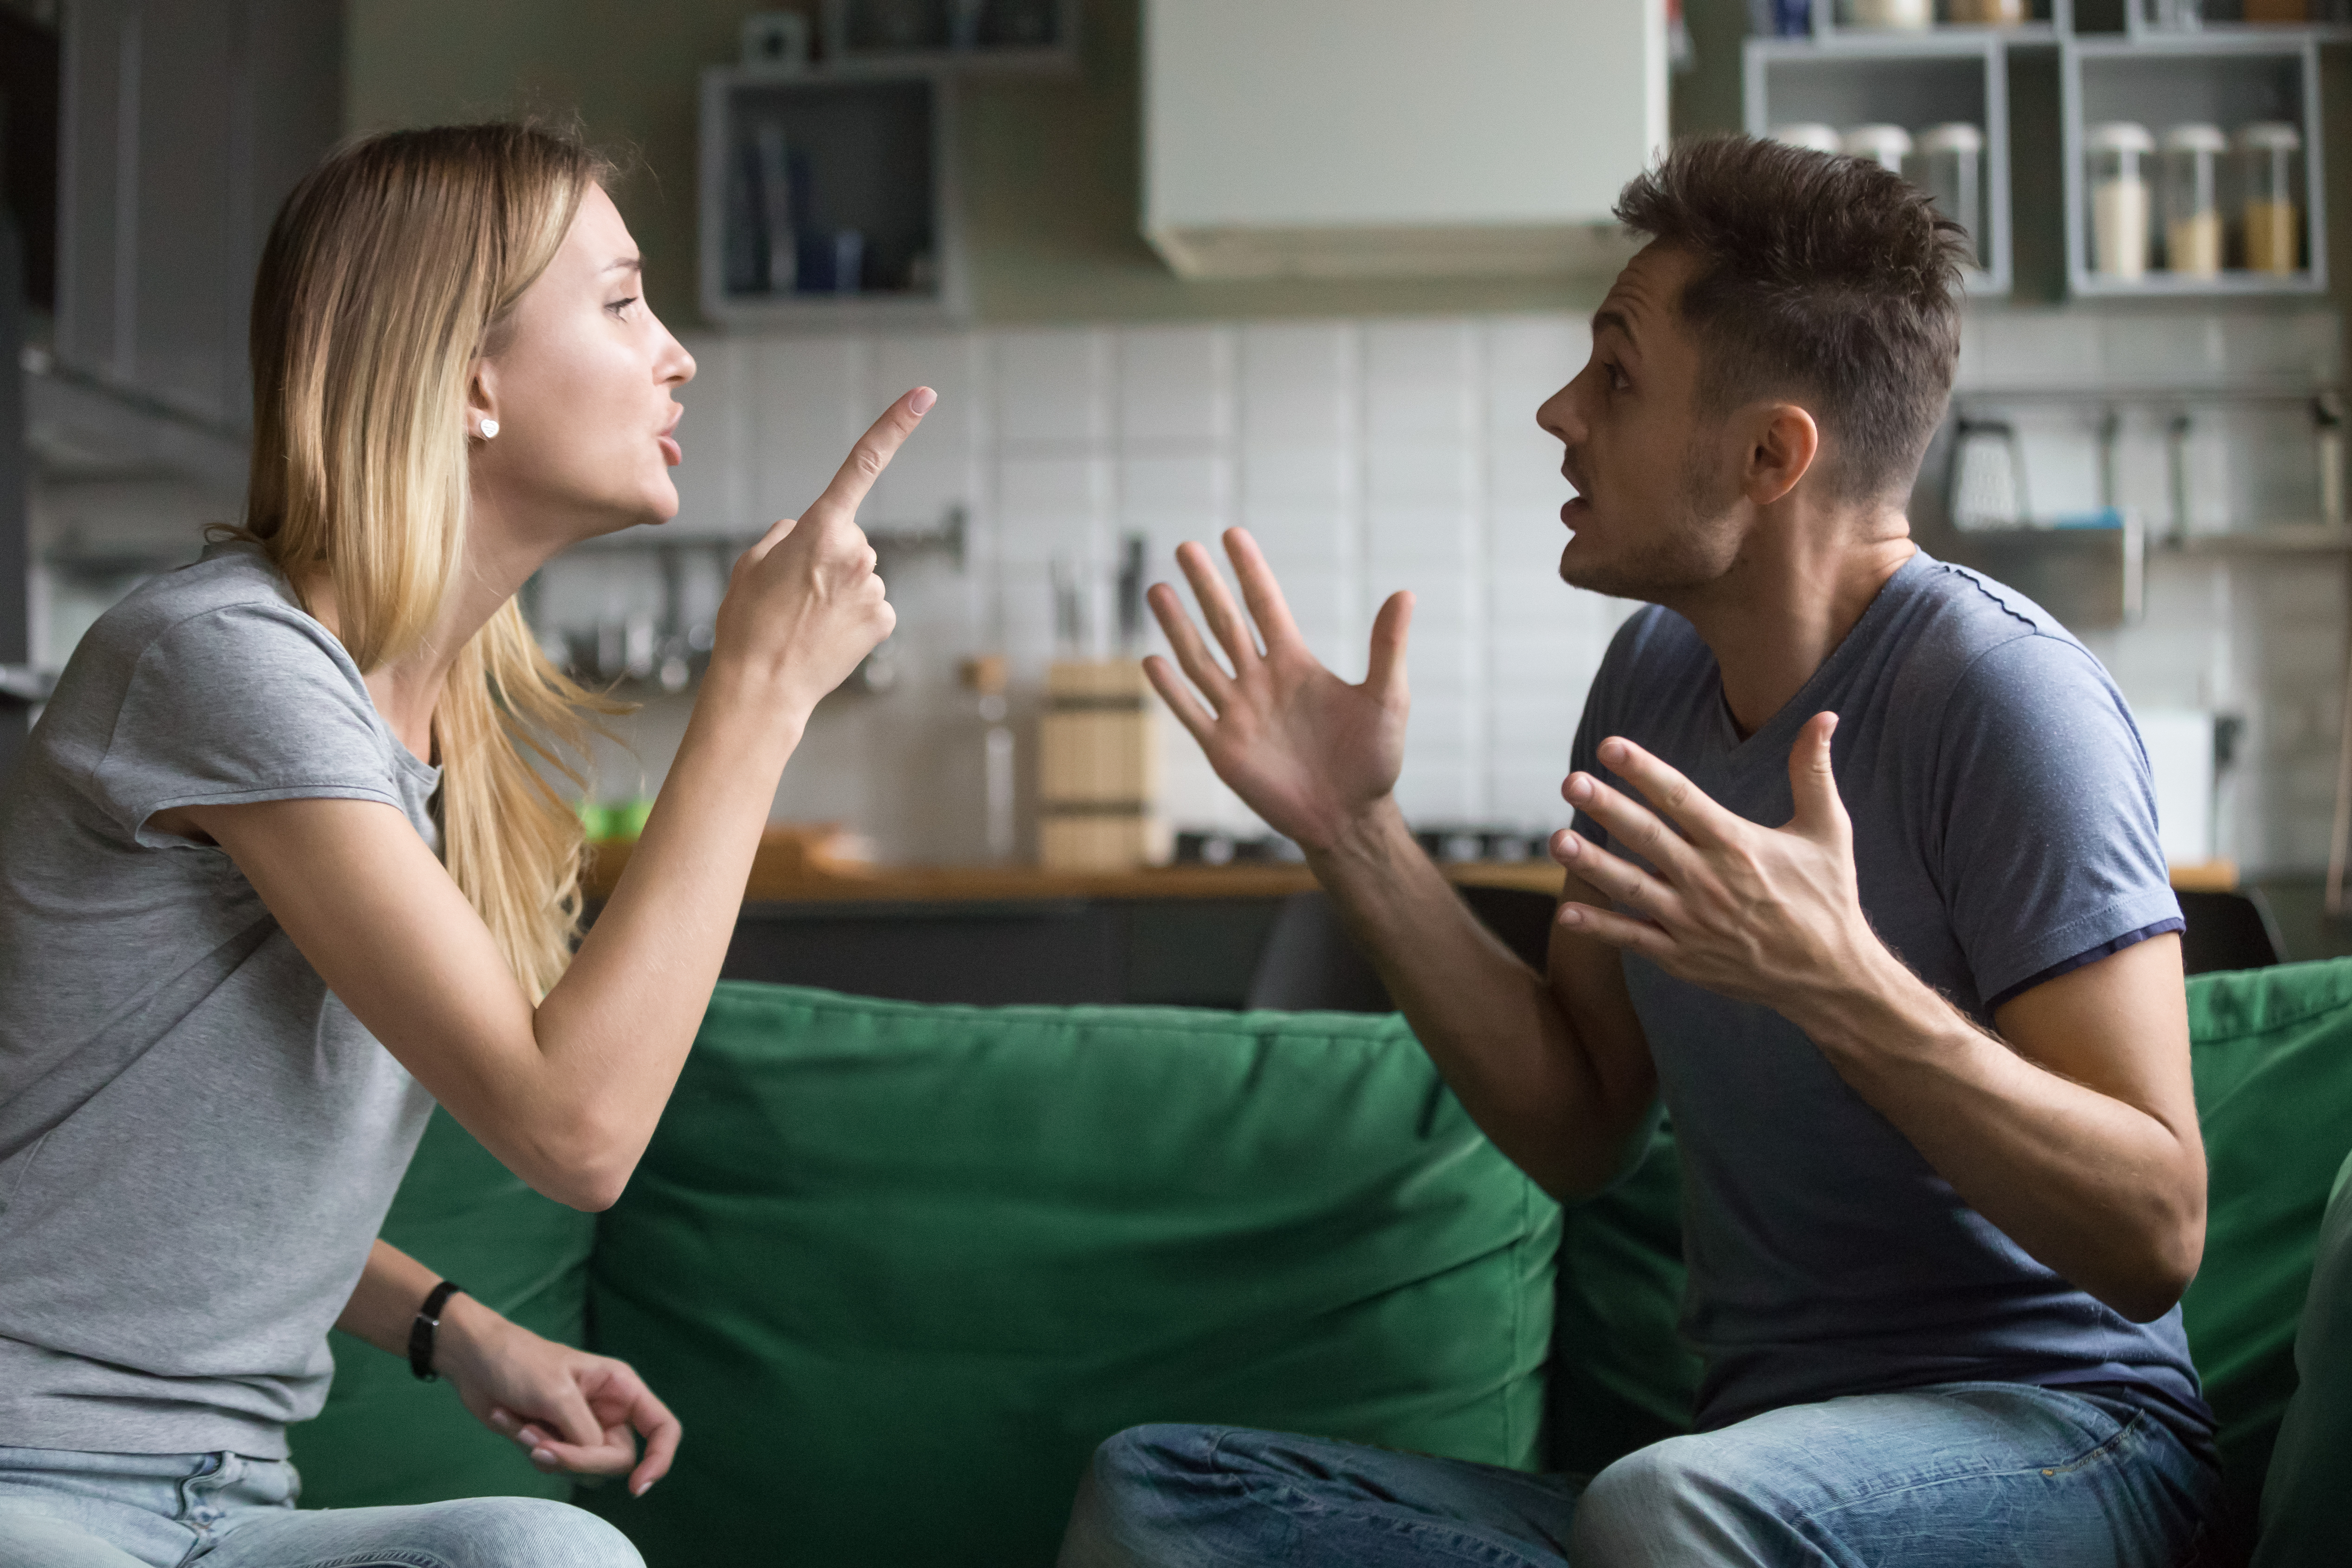 Une femme et un homme en train de se disputer. | Source : Shutterstock/fizkes